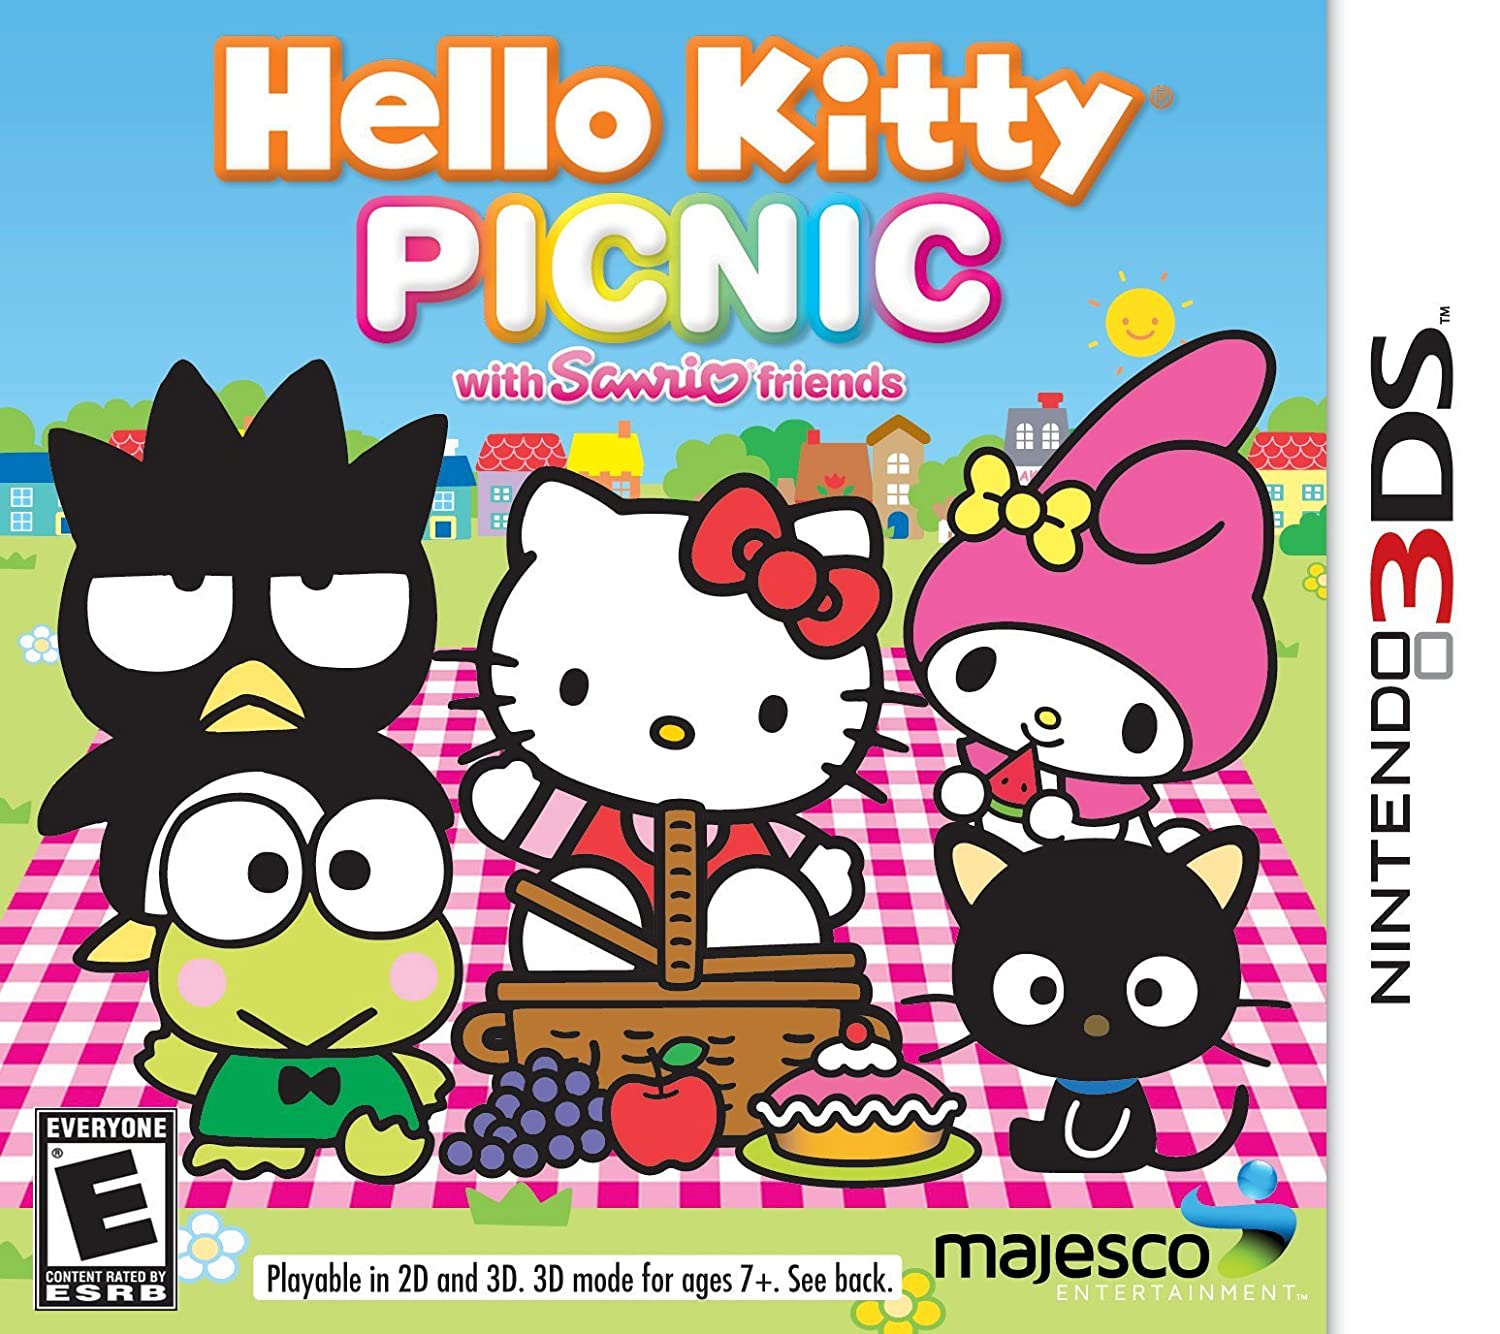 Hello Kitty Picnic Sanrio Friends (3DS) - The